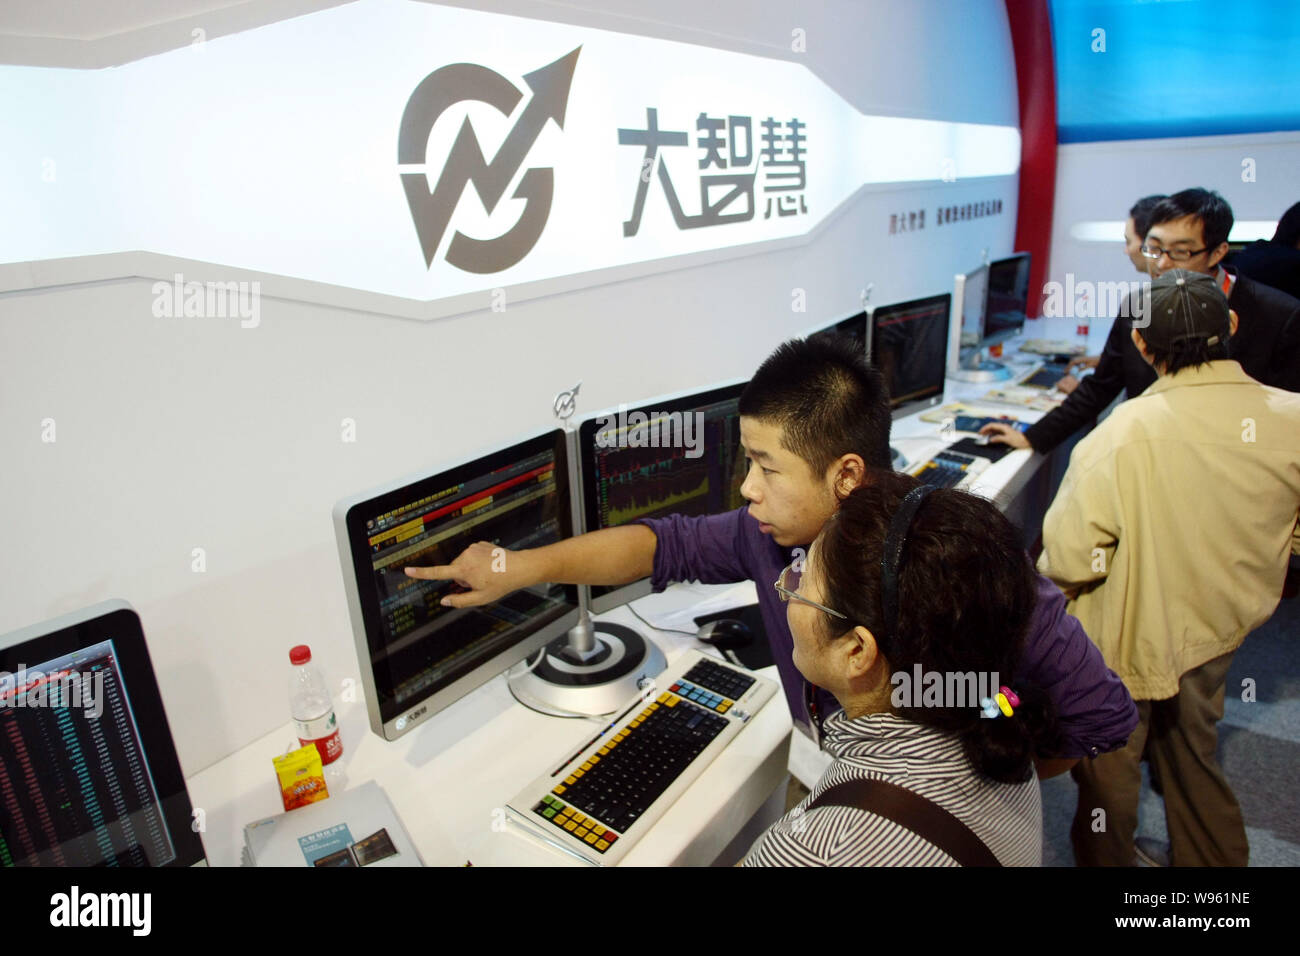 --FILE--employés chinois de Shanghai une grande sagesse Co., Ltd. introduire leur système d'analyse de stock aux visiteurs lors d'une exposition universelle à Shanghai, Chine, 18 N Banque D'Images